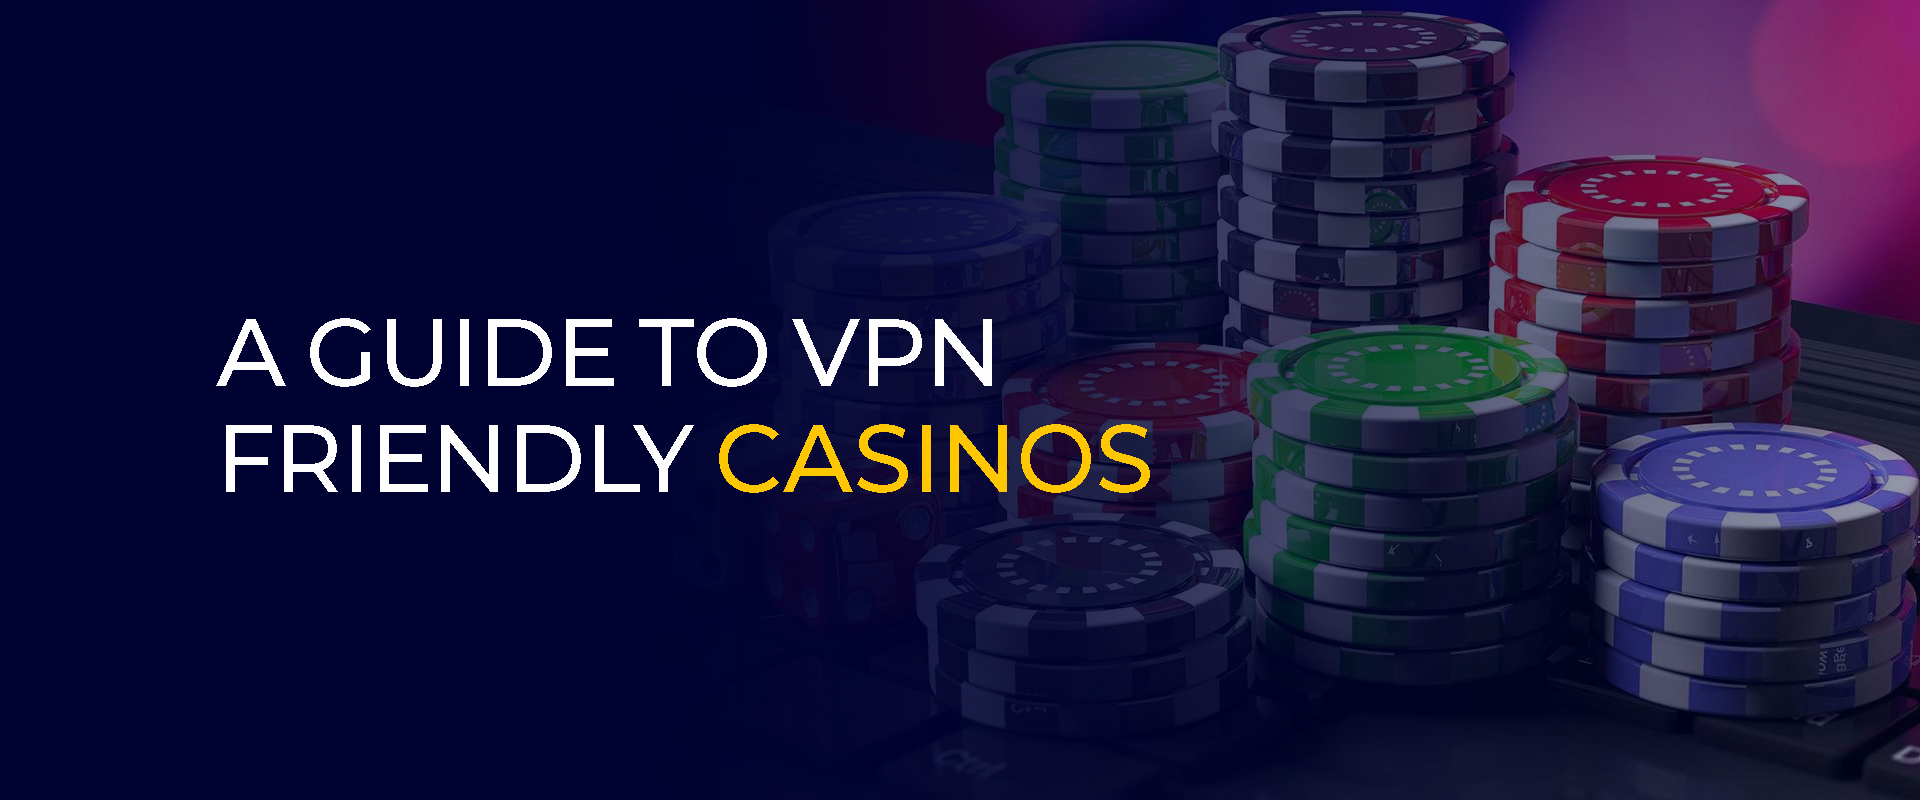 Gids voor VPN-vriendelijke casino's